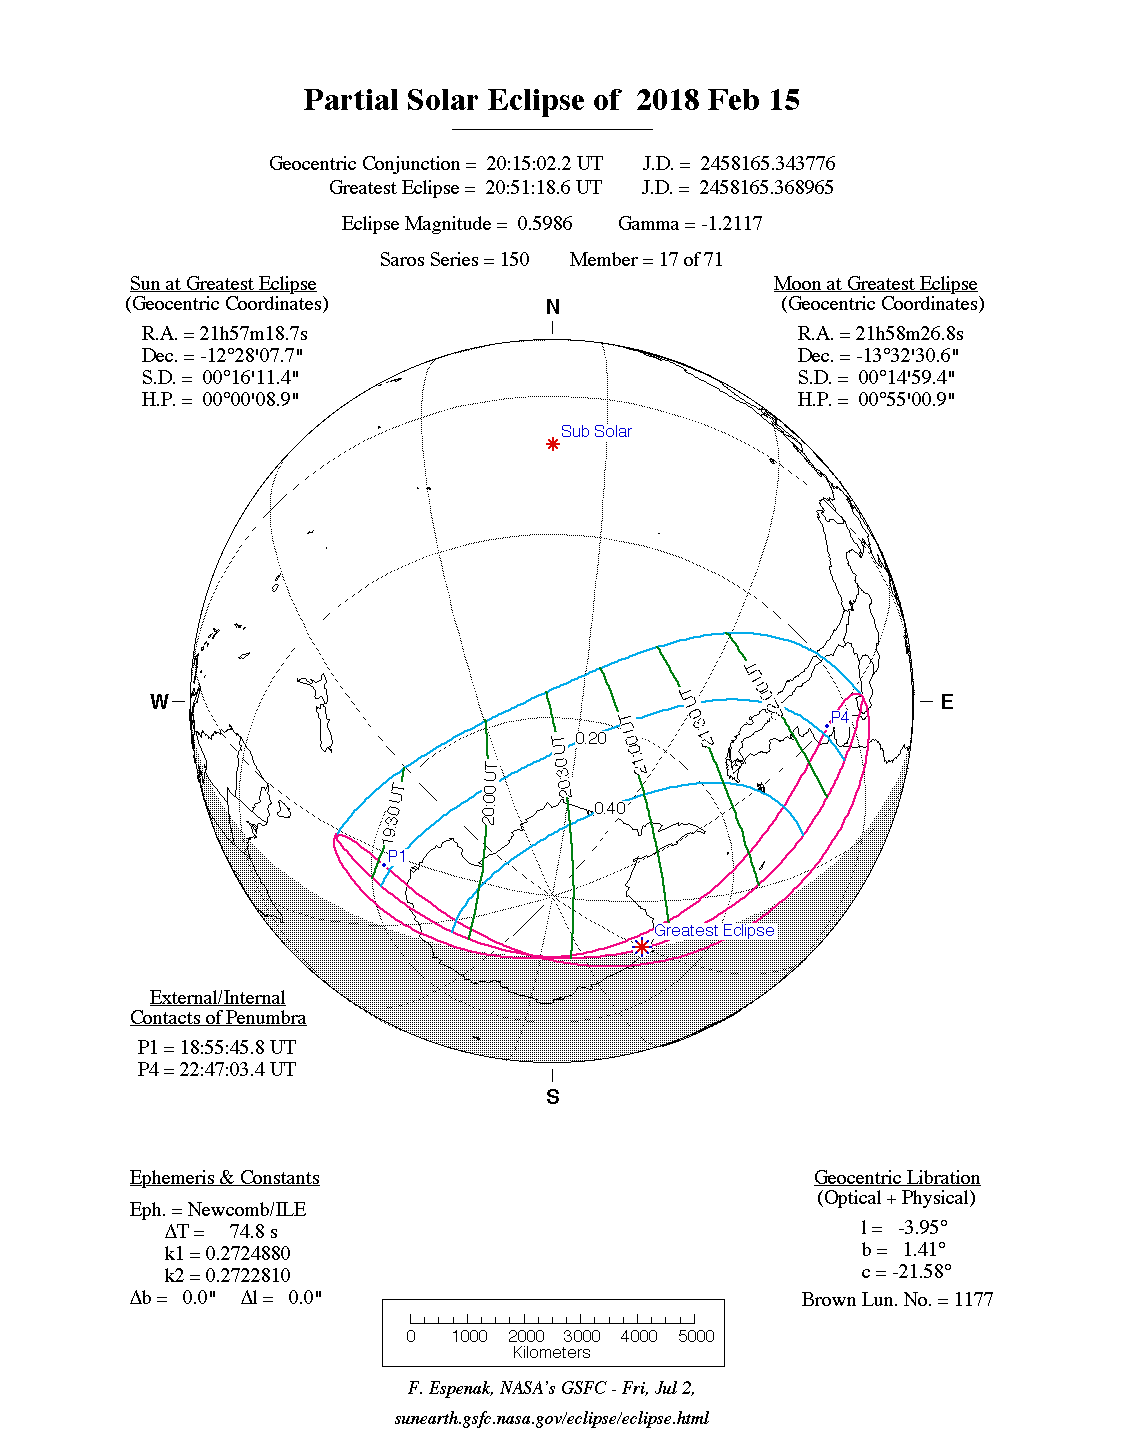 Verlauf der Partiellen Sonnenfinsternis am 15.02.2018